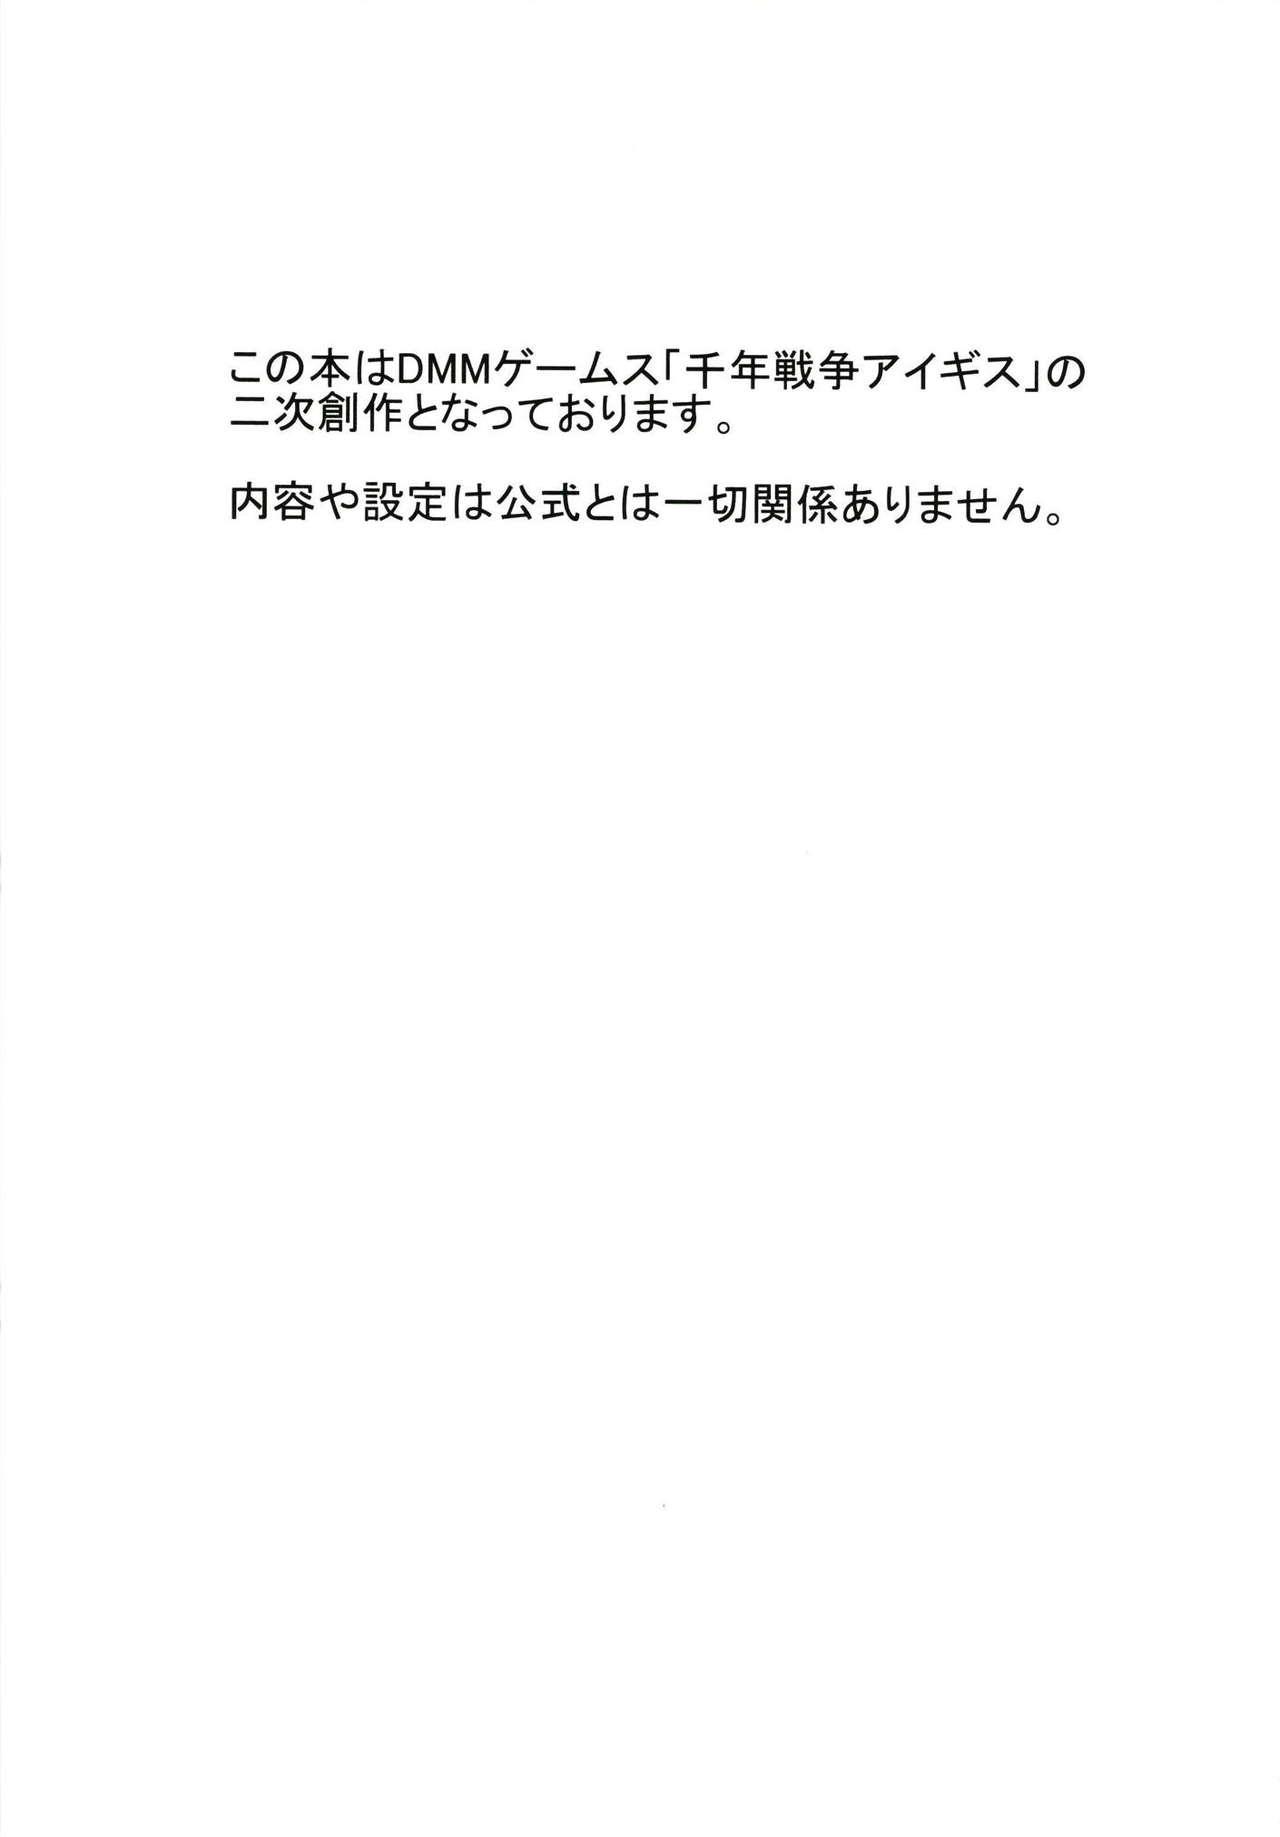 Adorable Koukando Item ja Kimi no Kokoro wa Hiraka Nai - Sennen sensou aigis Thuylinh - Page 2